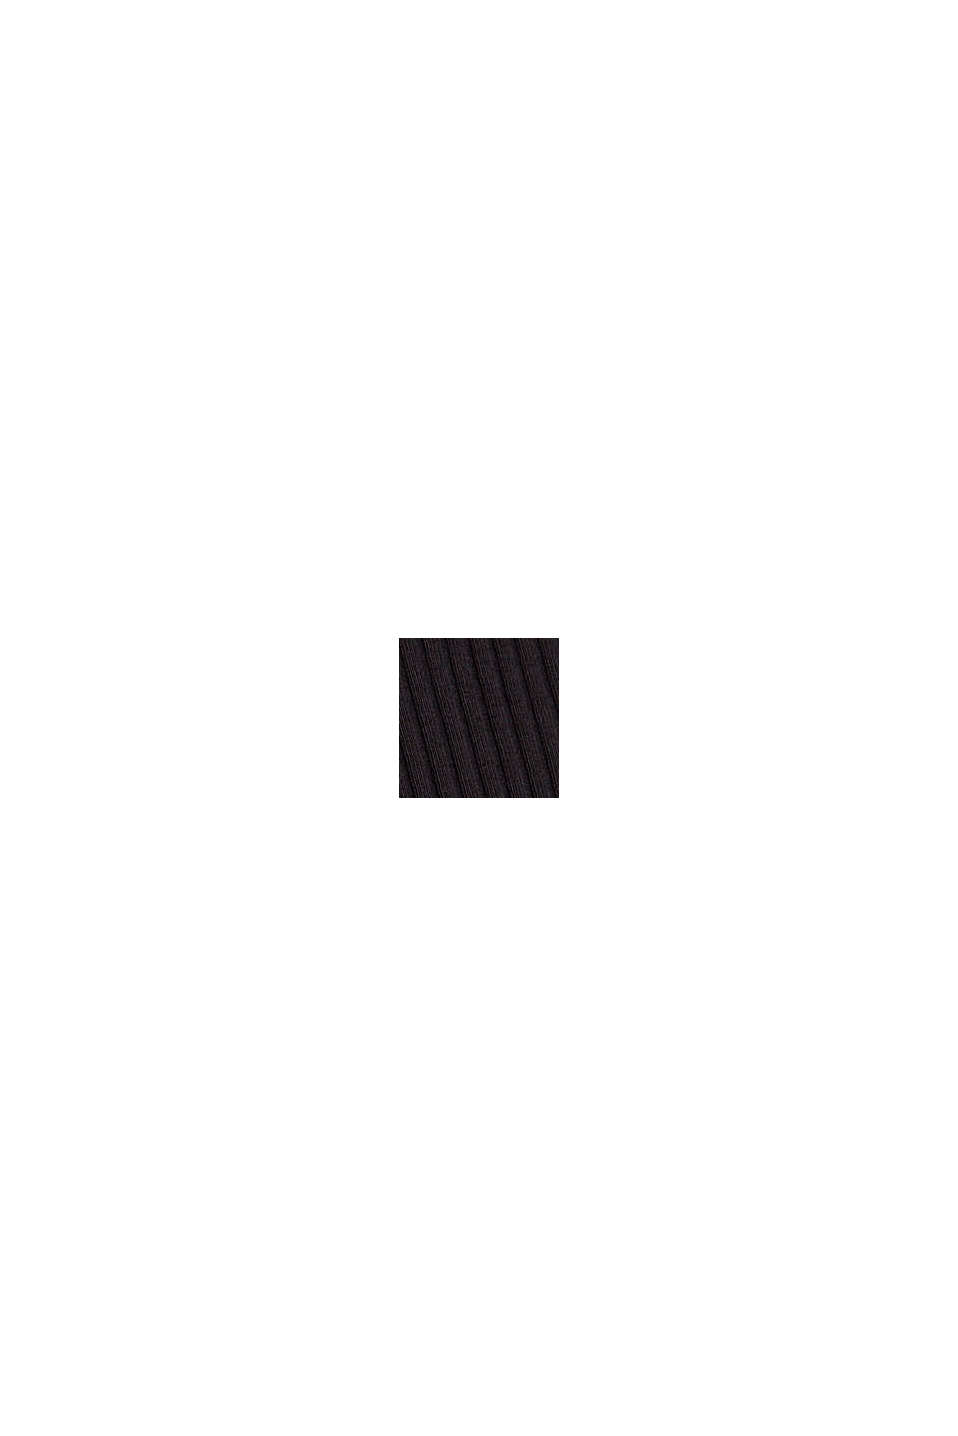 Pantalón de pernera ancha en algodón ecológico, BLACK, swatch